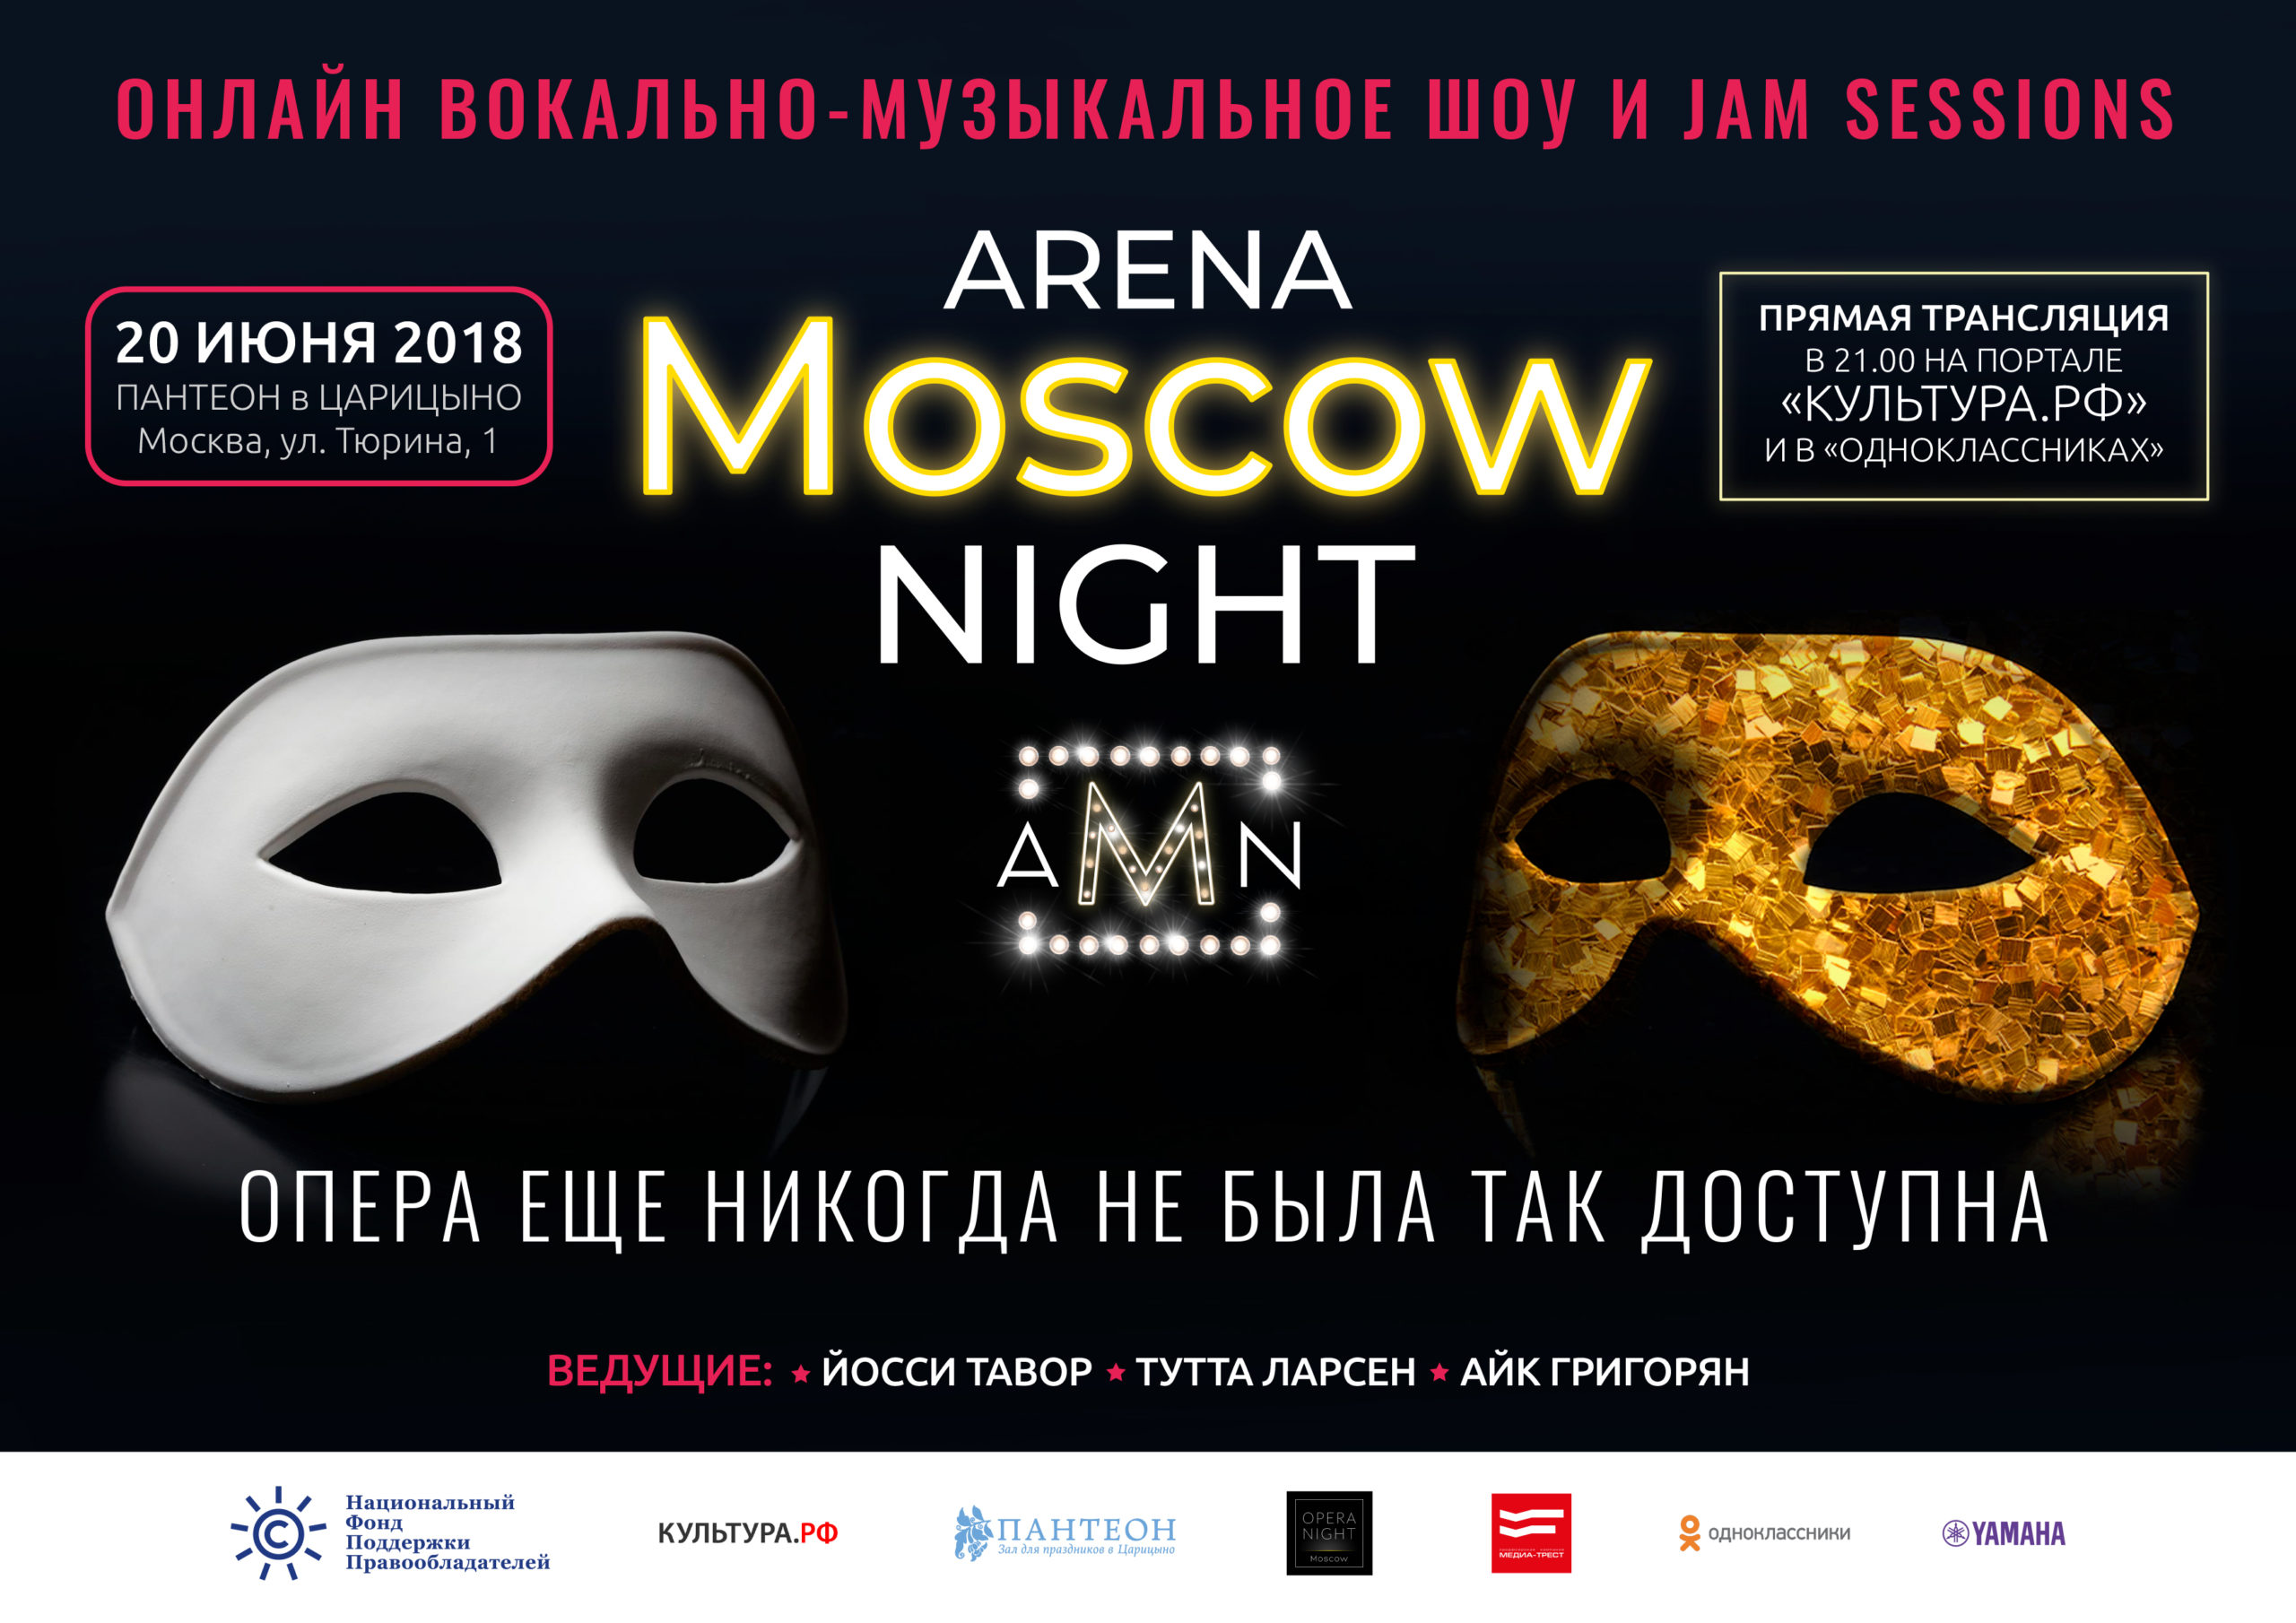 Arena Moscow Night: пятый этап оперной битвы онлайн состоится 20 июня